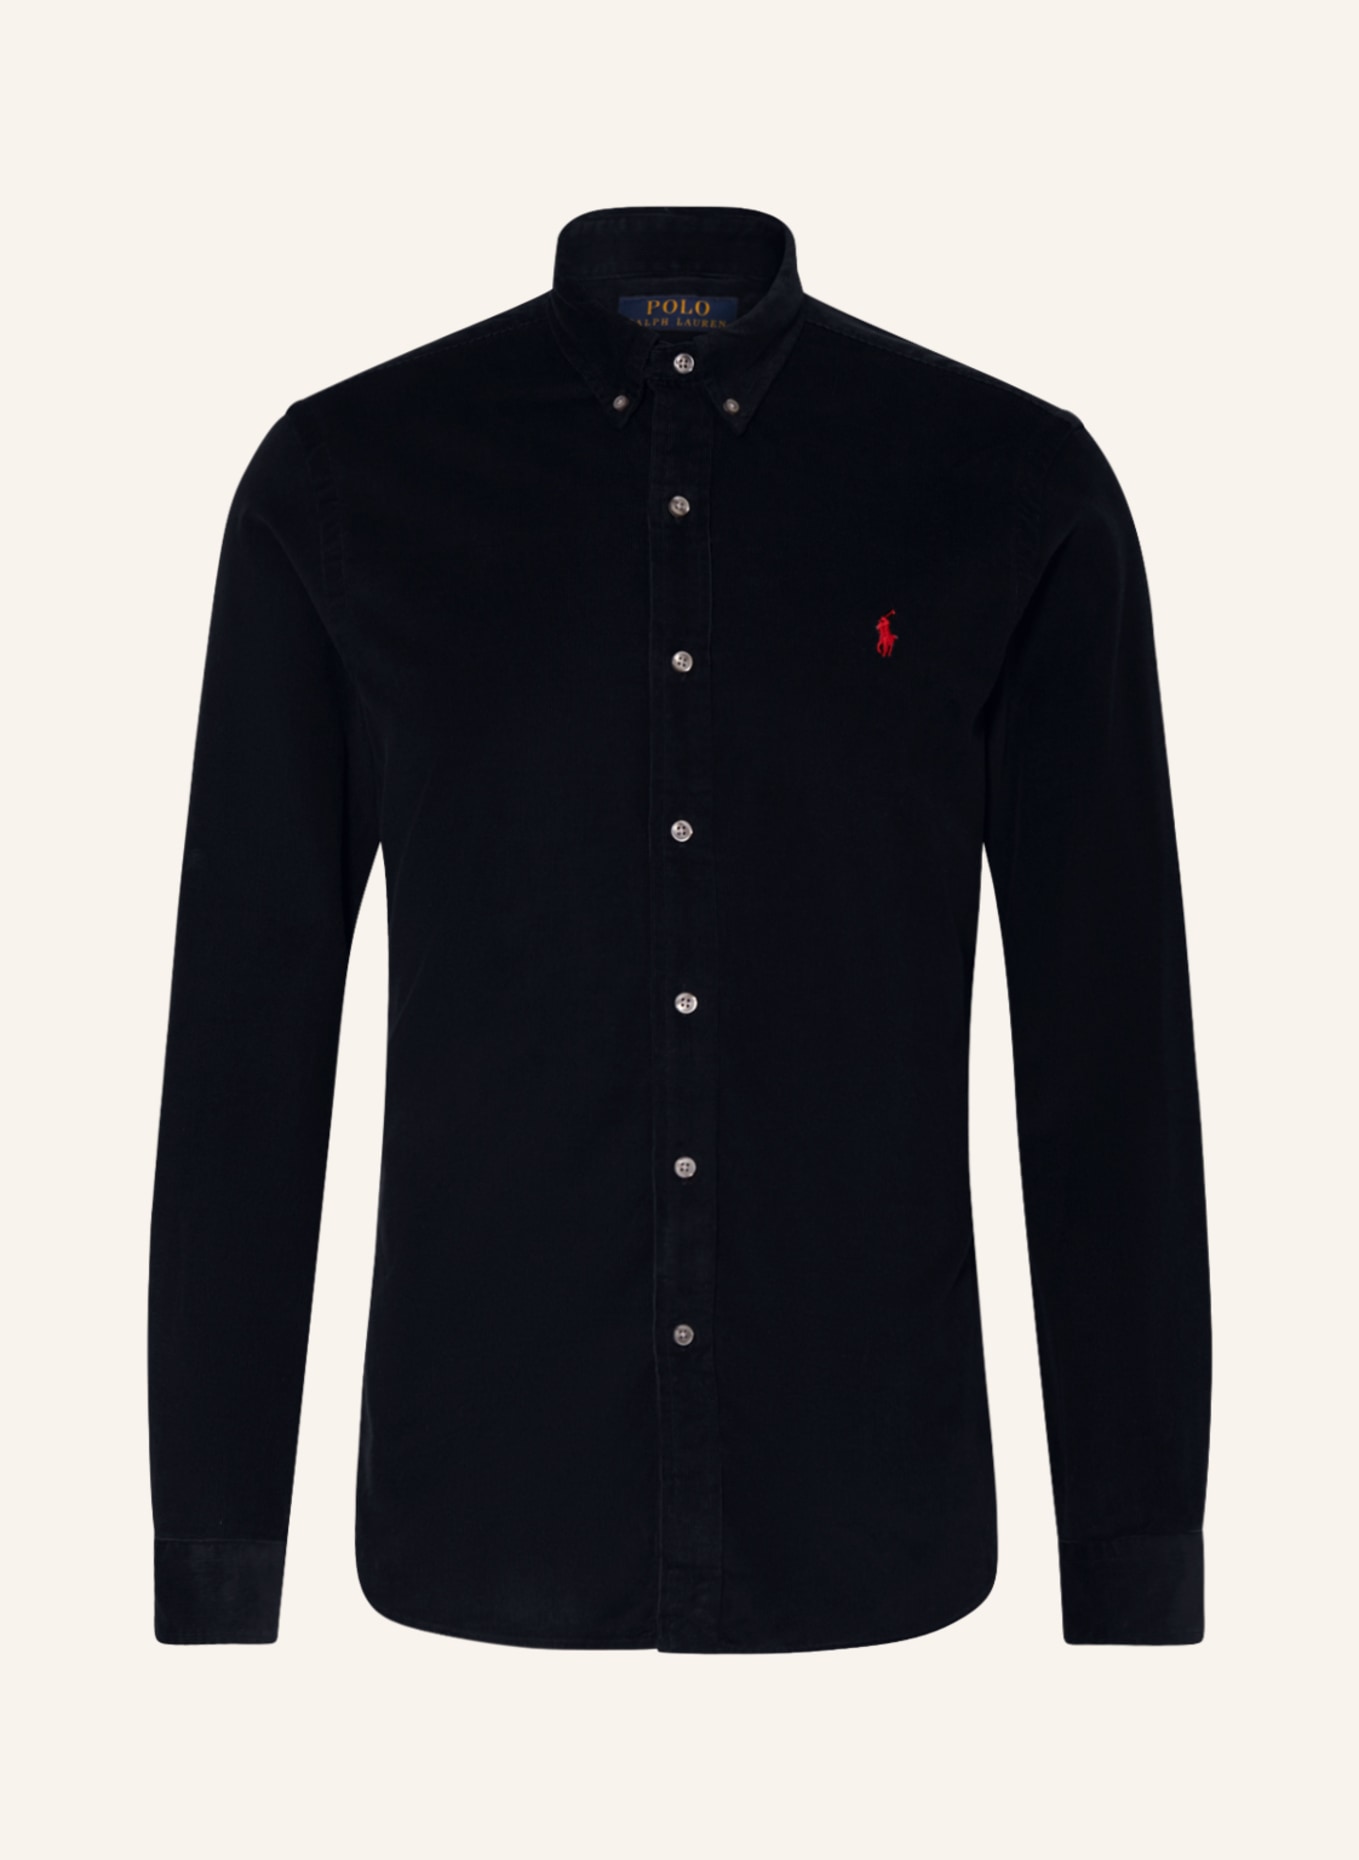 POLO RALPH LAUREN Corduroy shirt slim fit, Color: BLACK (Image 1)